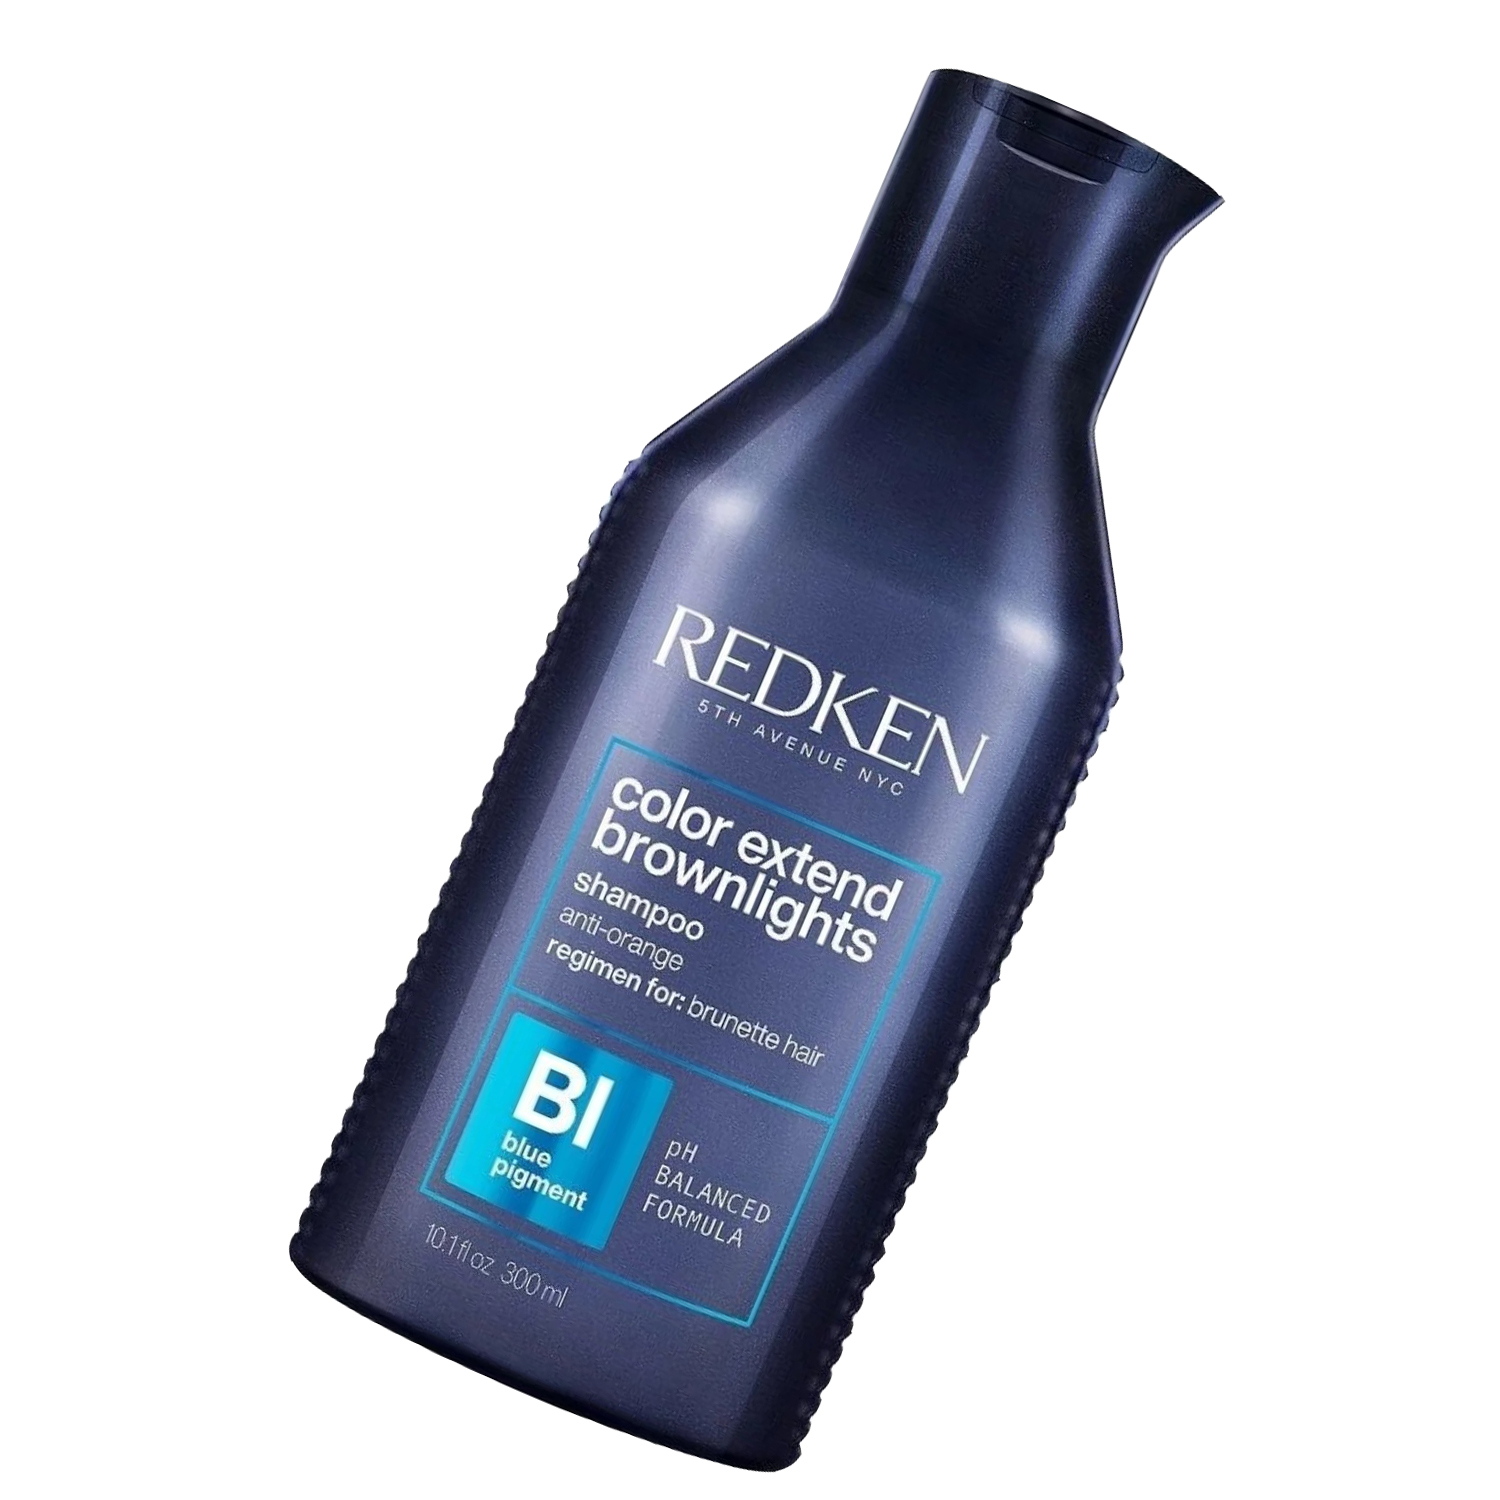 Redken Color Extend Brownlights Shampoo for Brunette Hair 10.1 oz - image 4 of 5